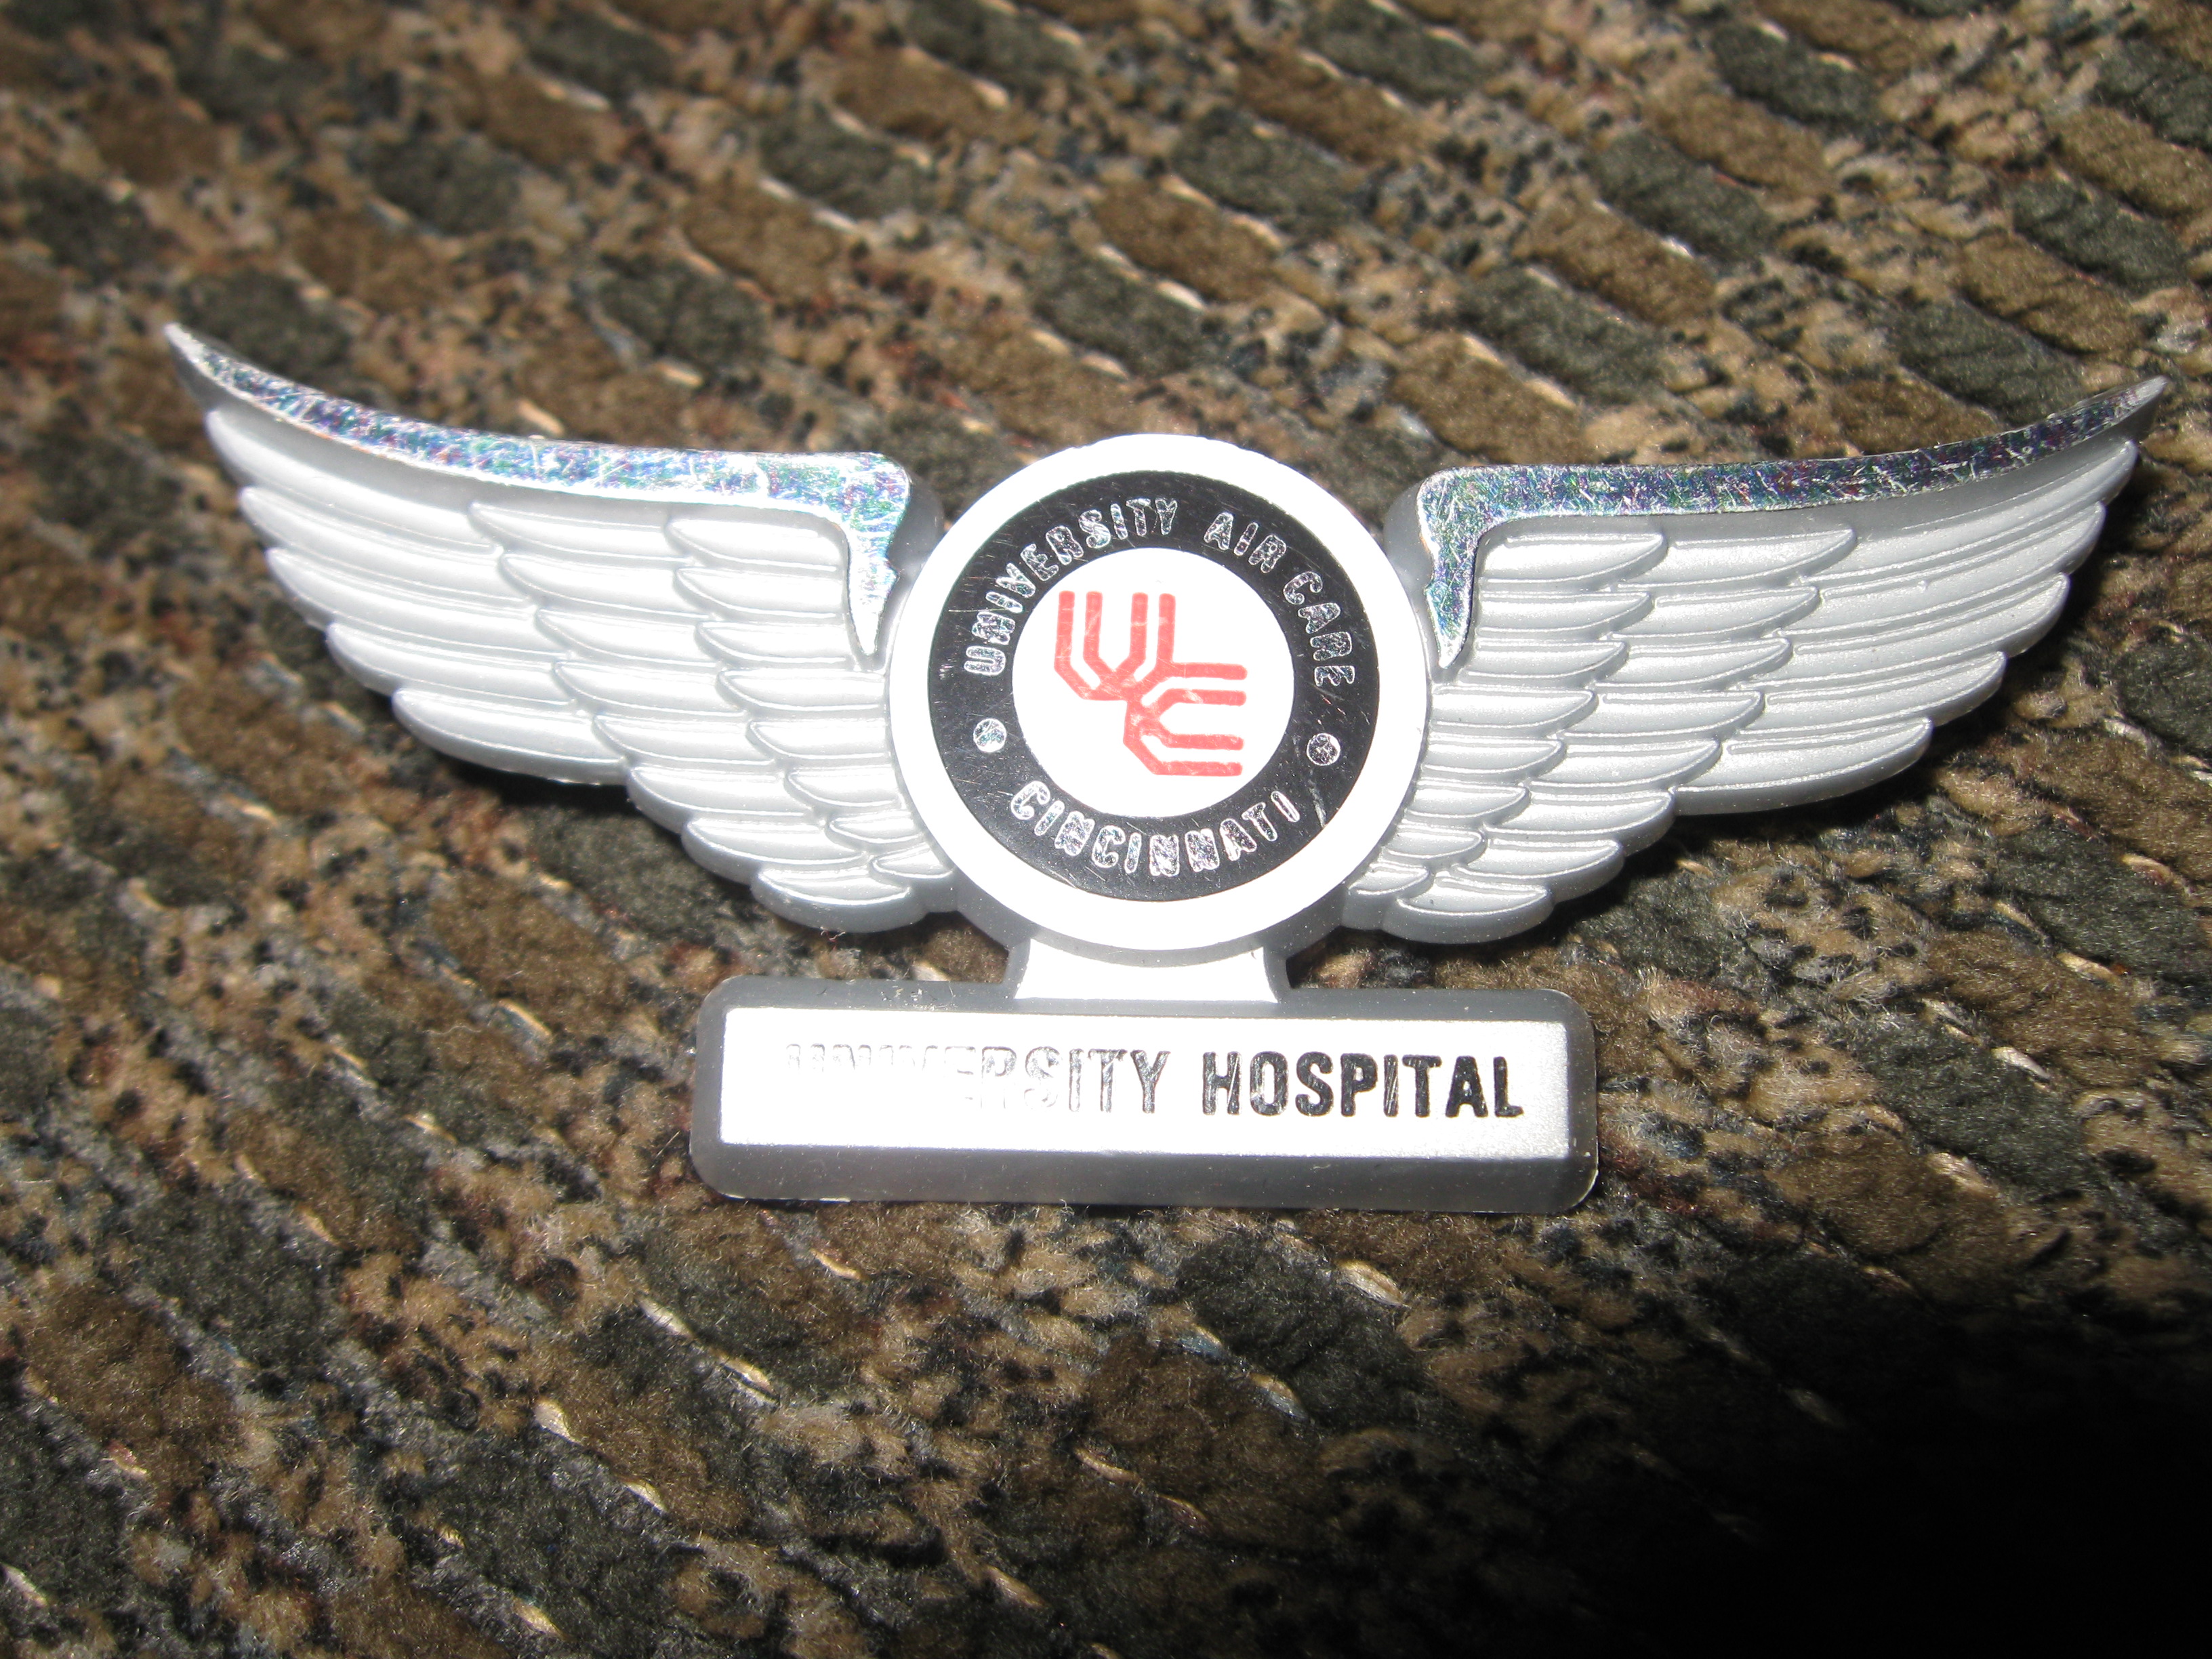 University Hospital Air care Cincinnati kiddie wings